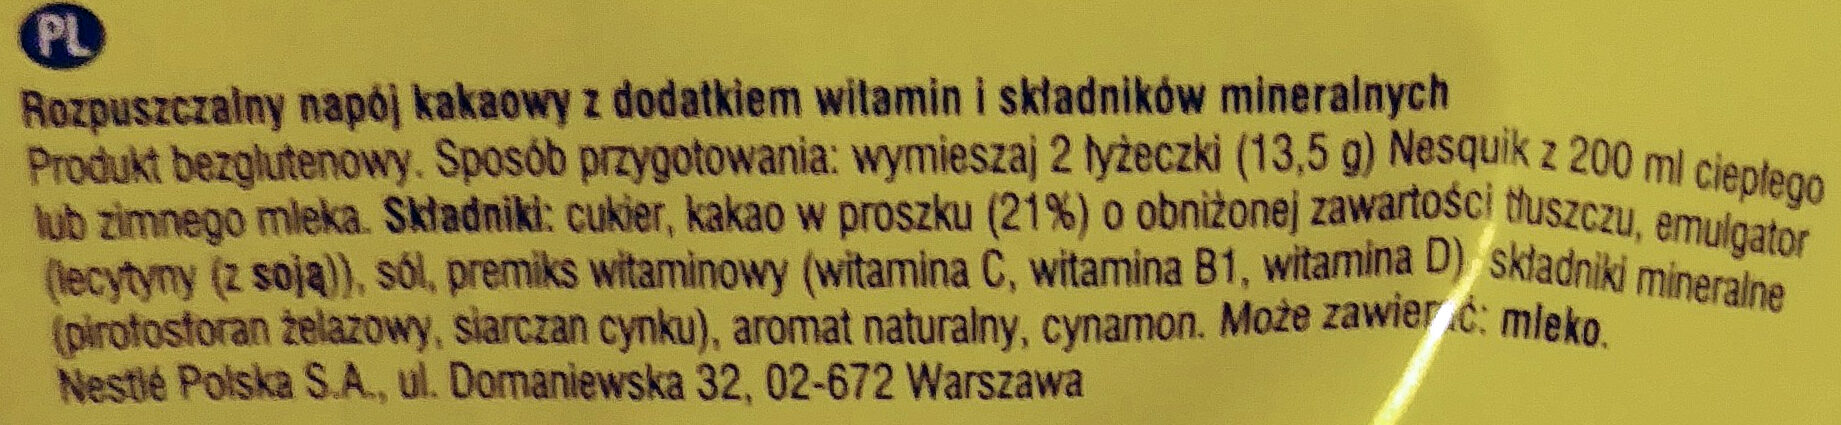 Rozpuszczalny napój kakaowy z dodatkiem witamin i składników mineralnych. - Ingredients - pl